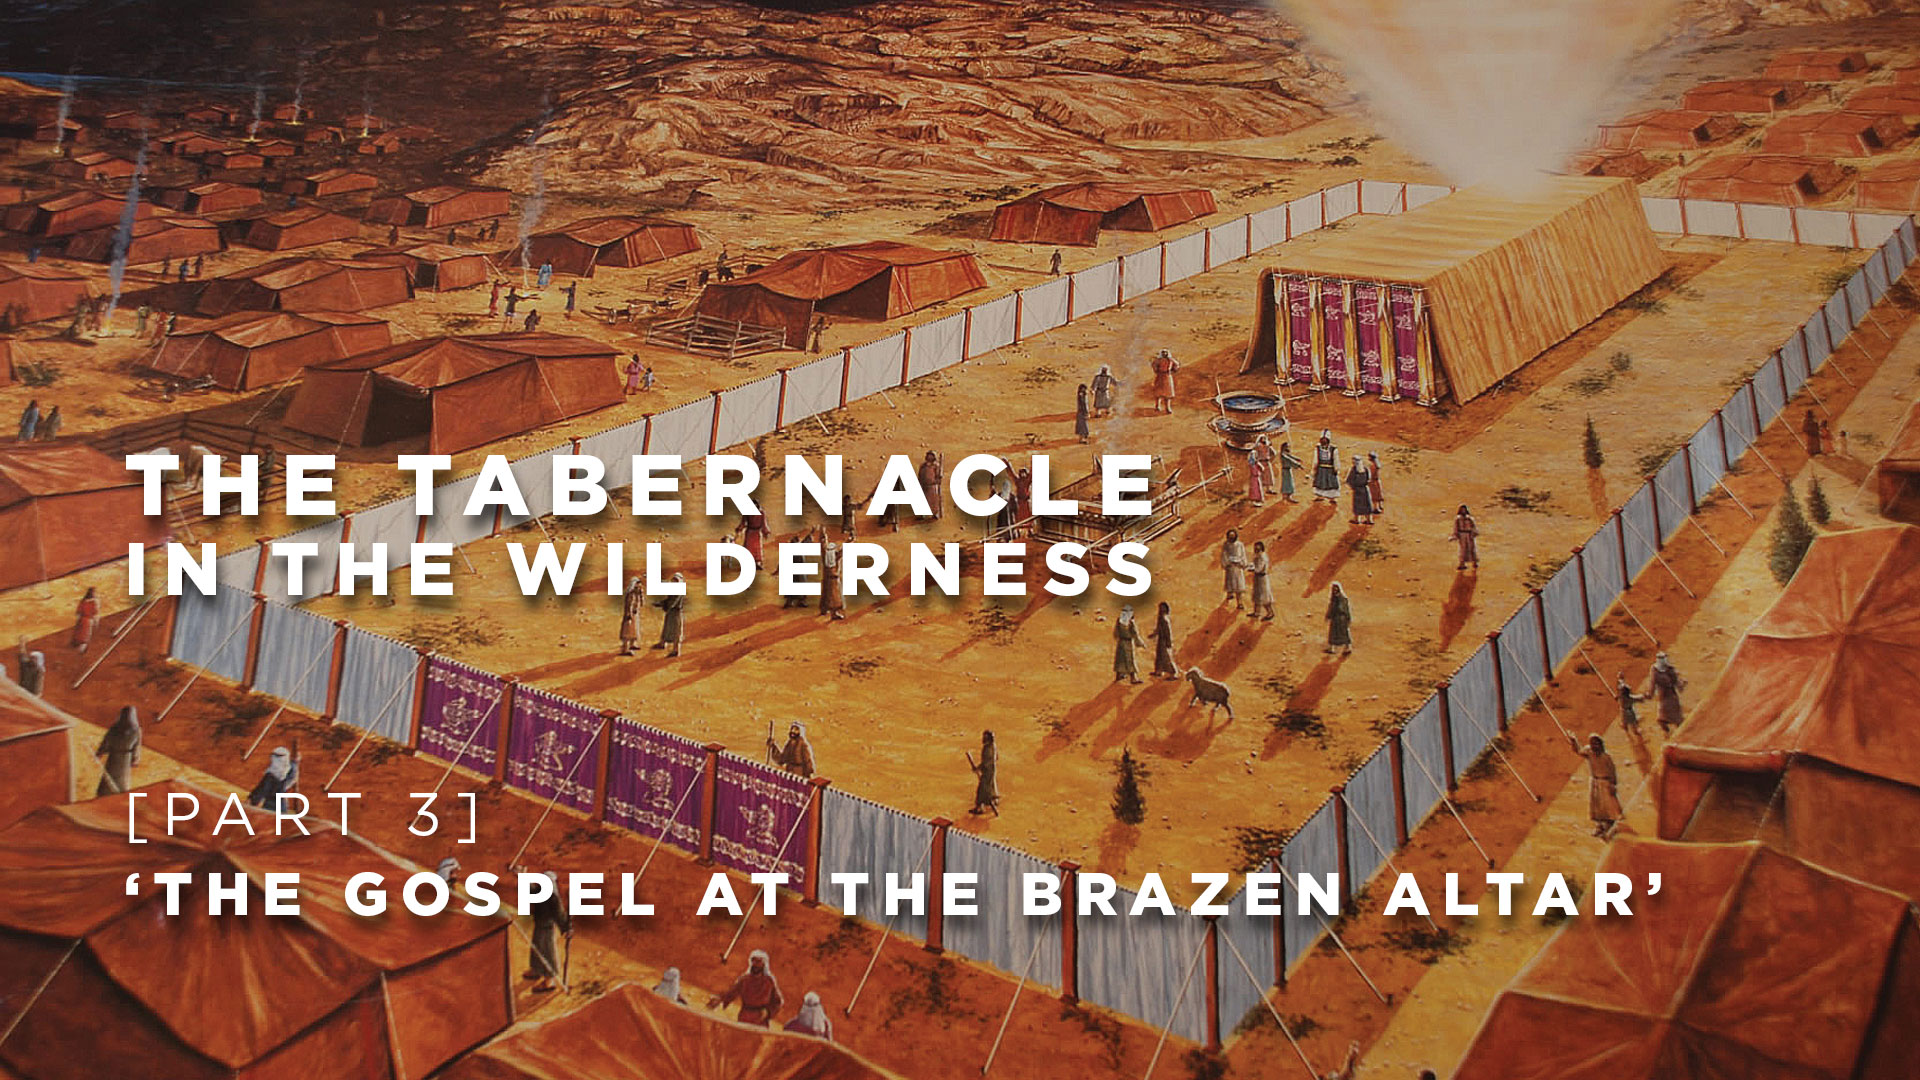 Part 3: The gospel at The Brazen Altar